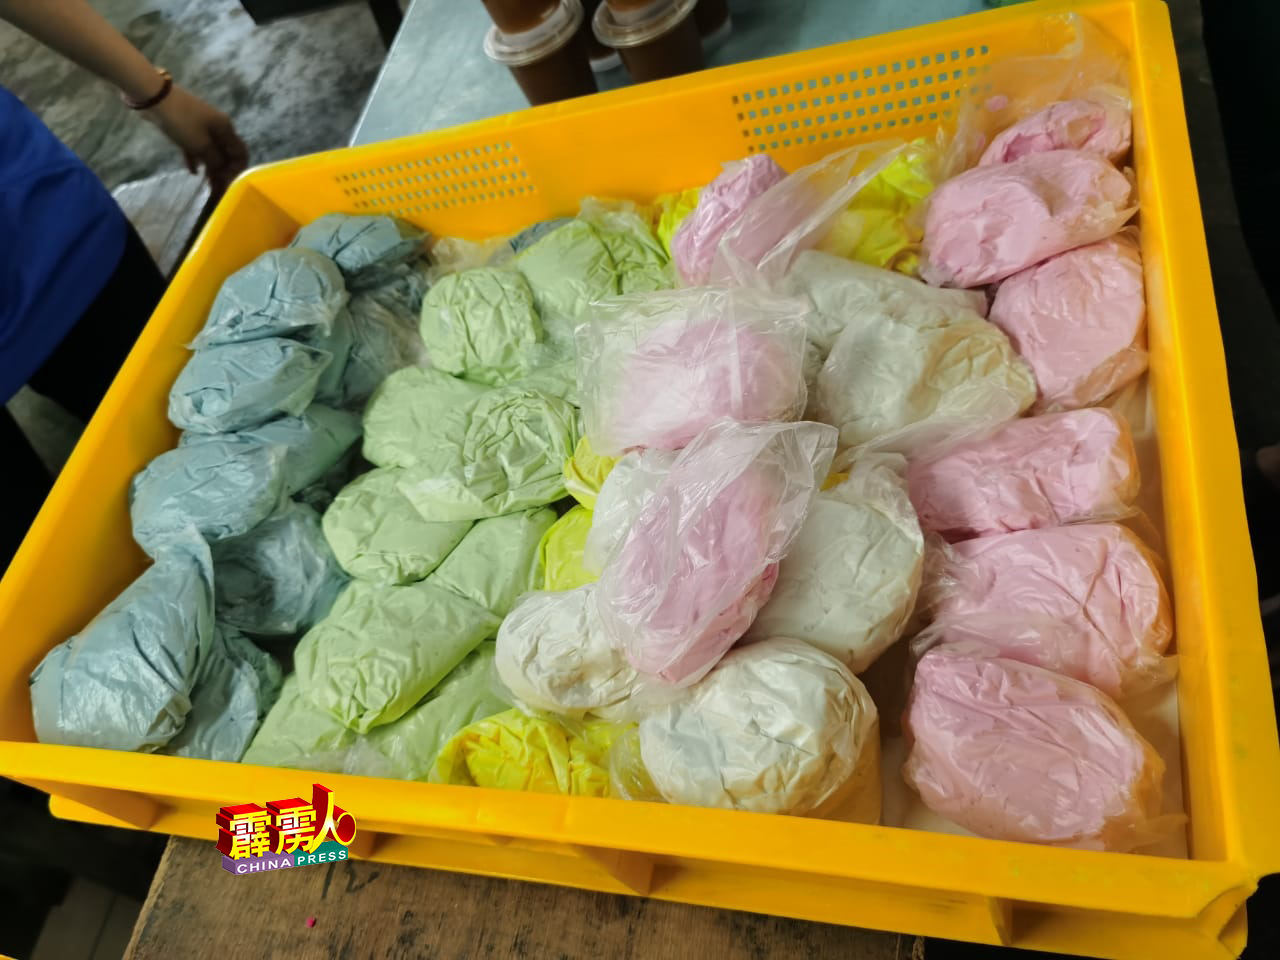 一些分成一小包不同色彩的糯米粉团每包售价约2令吉。